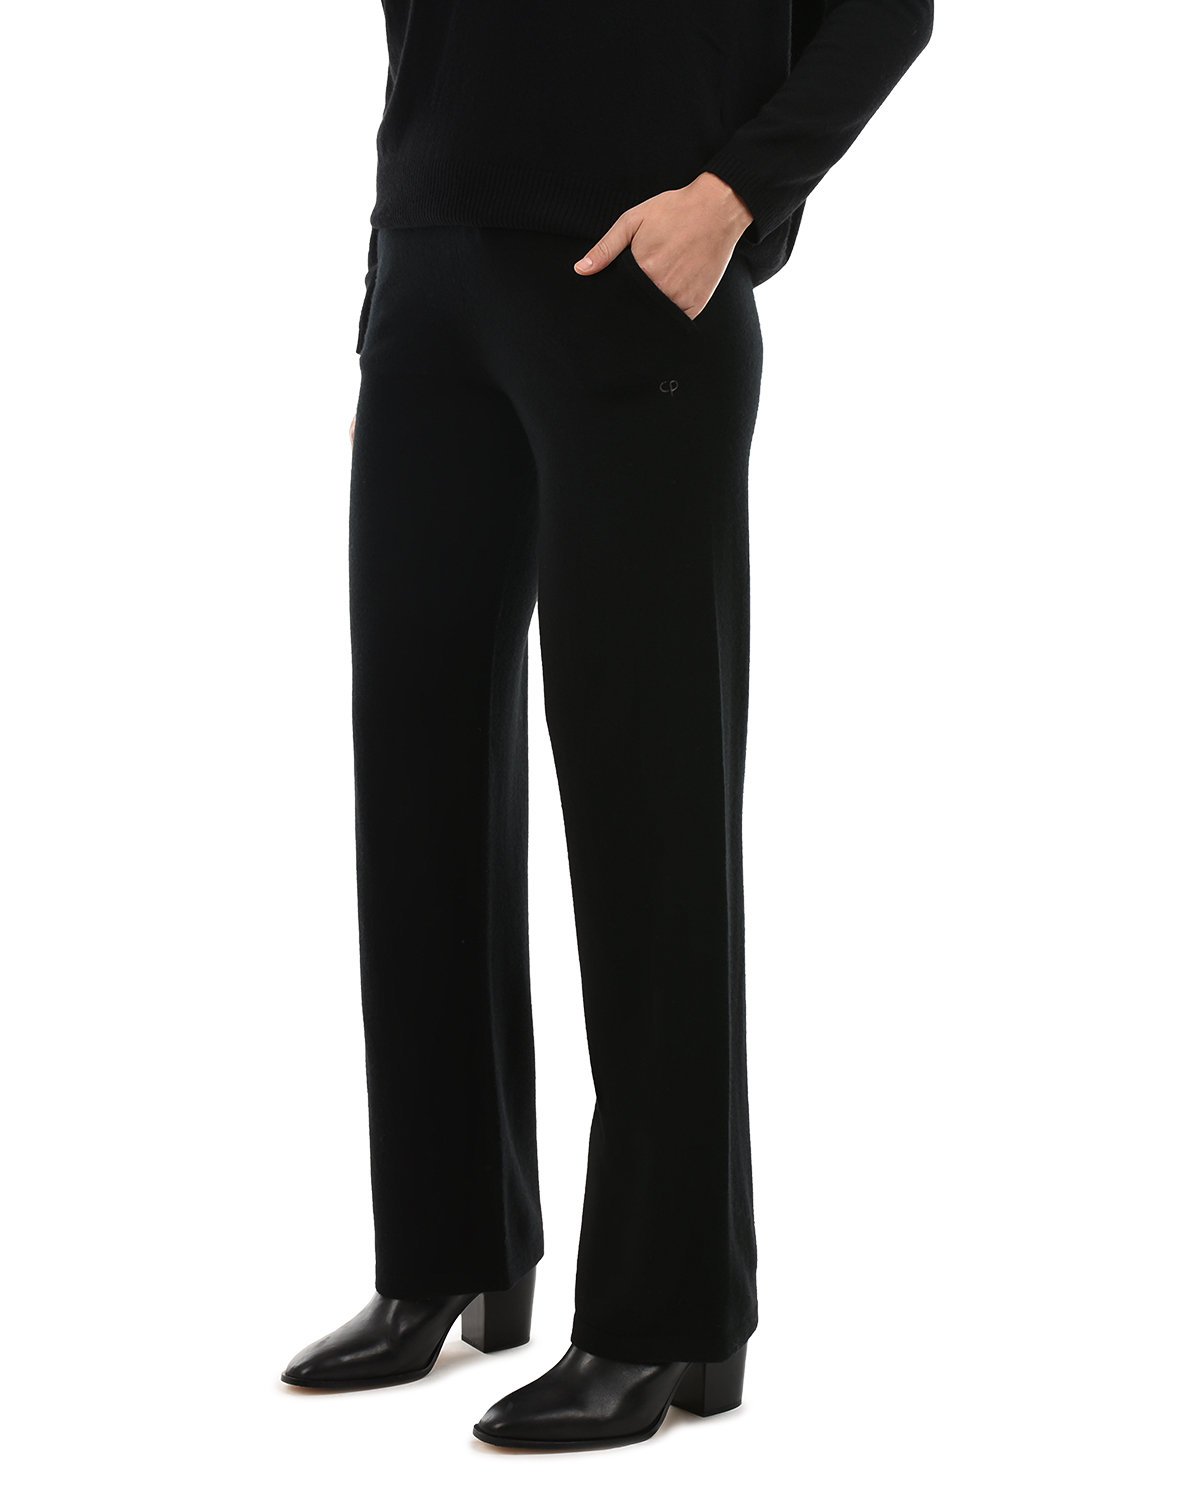 Черные брюки с поясом на кулиске Chinti&Parker, размер 38, цвет черный - фото 8